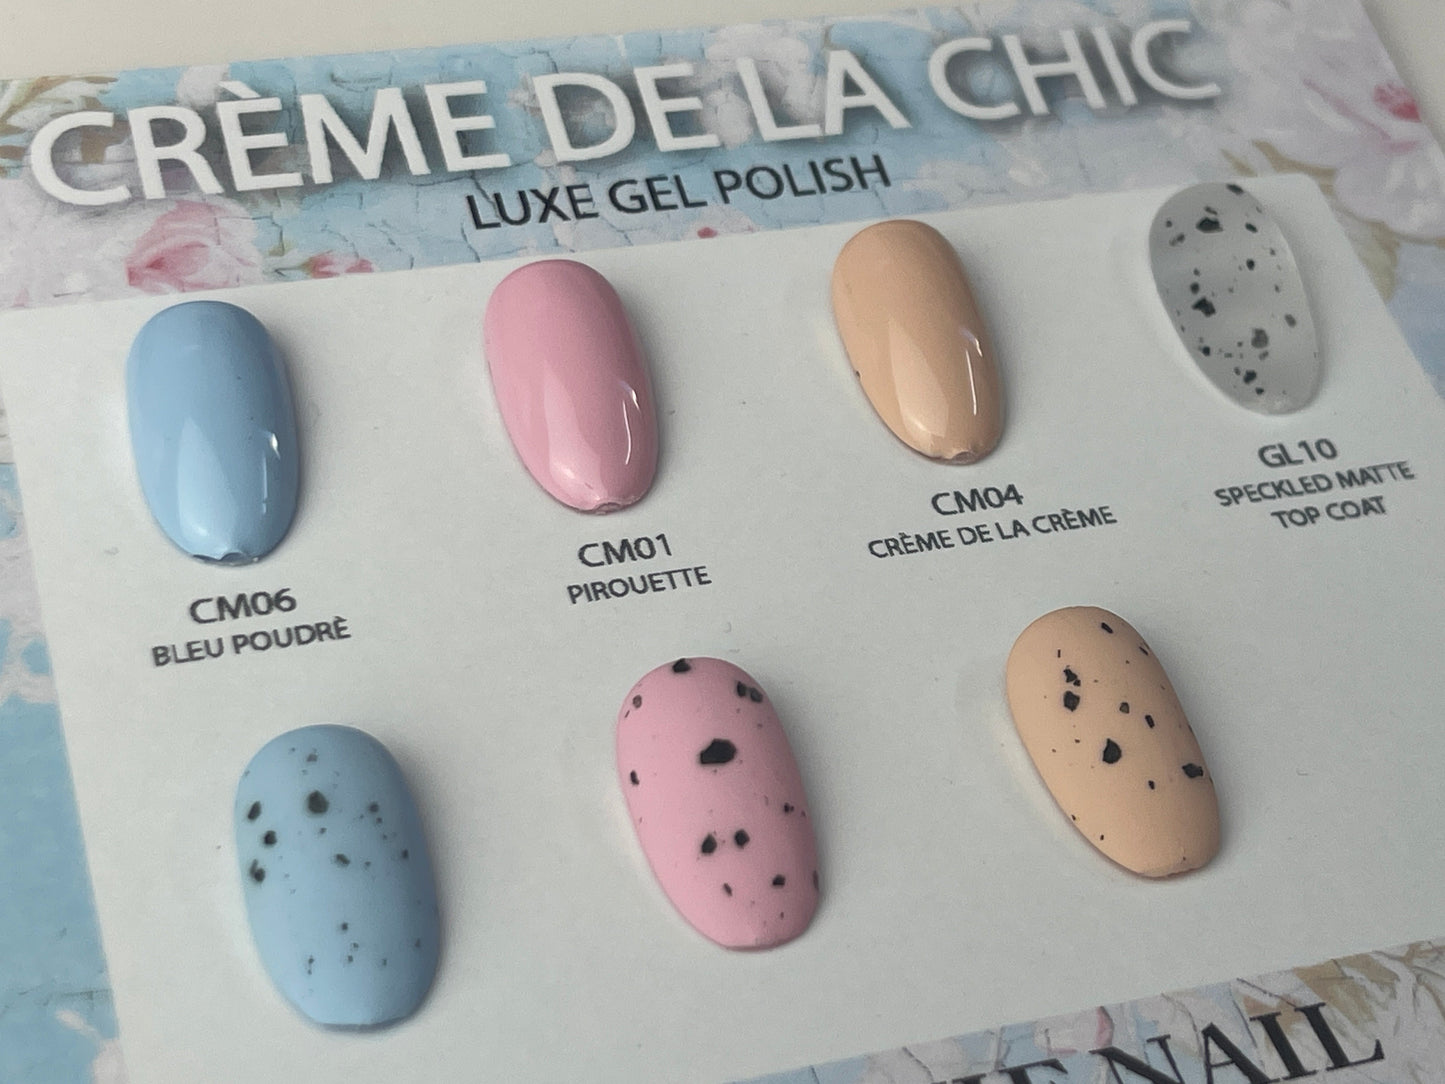 HEMA FREE Crème de la Chic- Crème de la Cremè UV Gel No.CM04 15ml